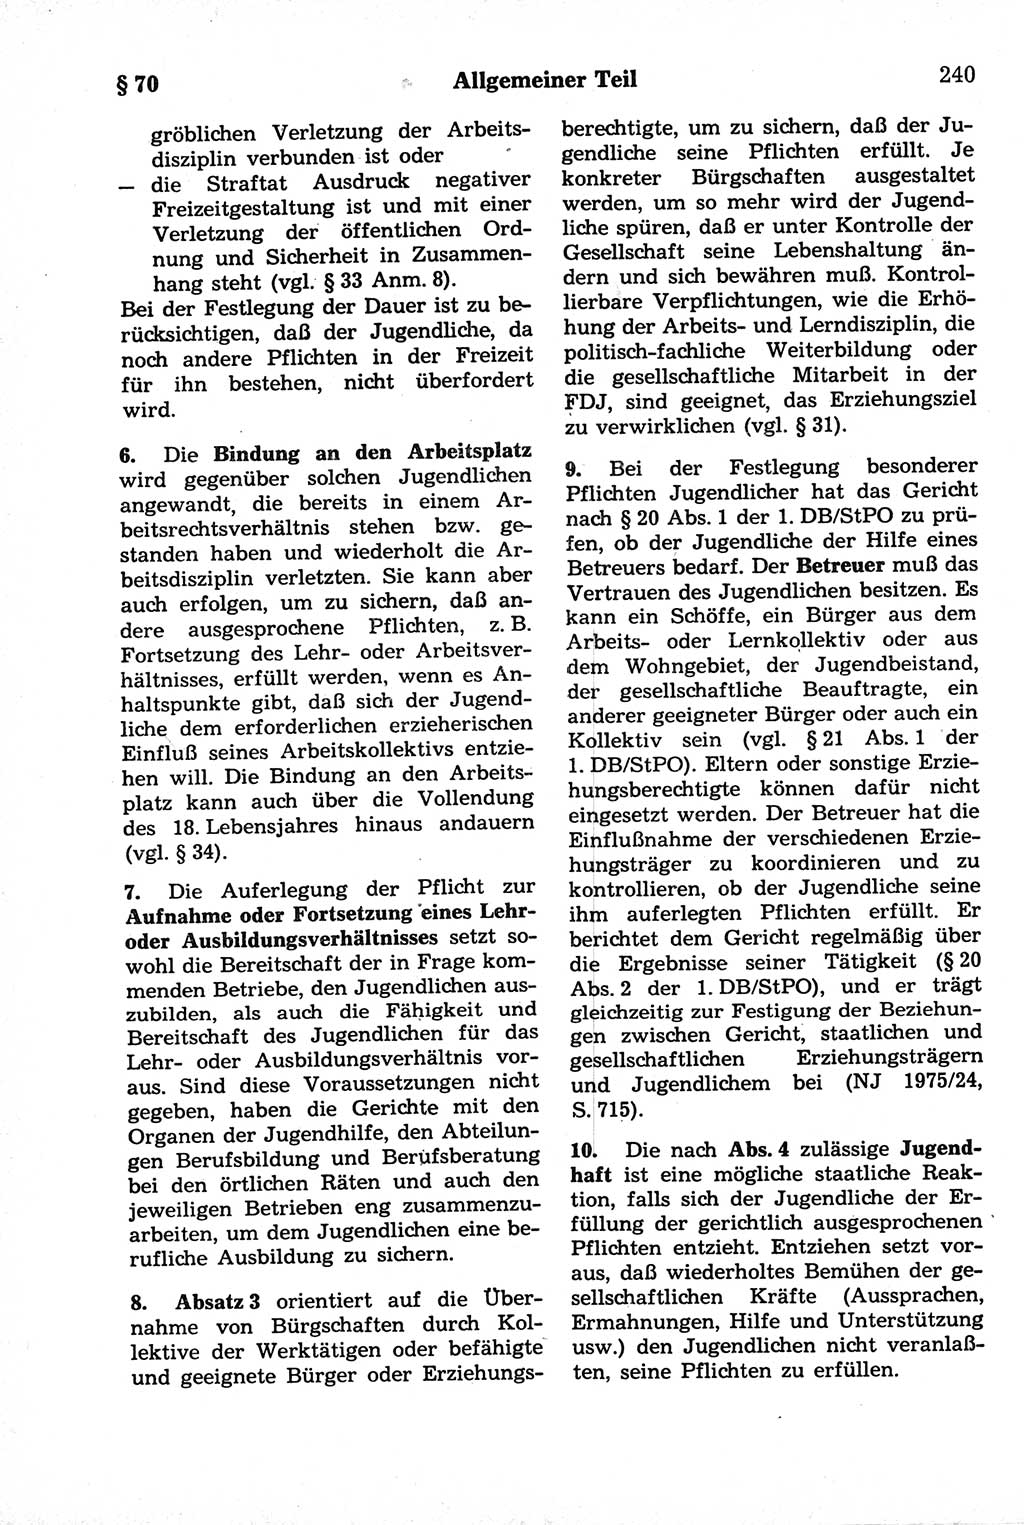 Strafrecht der Deutschen Demokratischen Republik (DDR), Kommentar zum Strafgesetzbuch (StGB) 1981, Seite 240 (Strafr. DDR Komm. StGB 1981, S. 240)